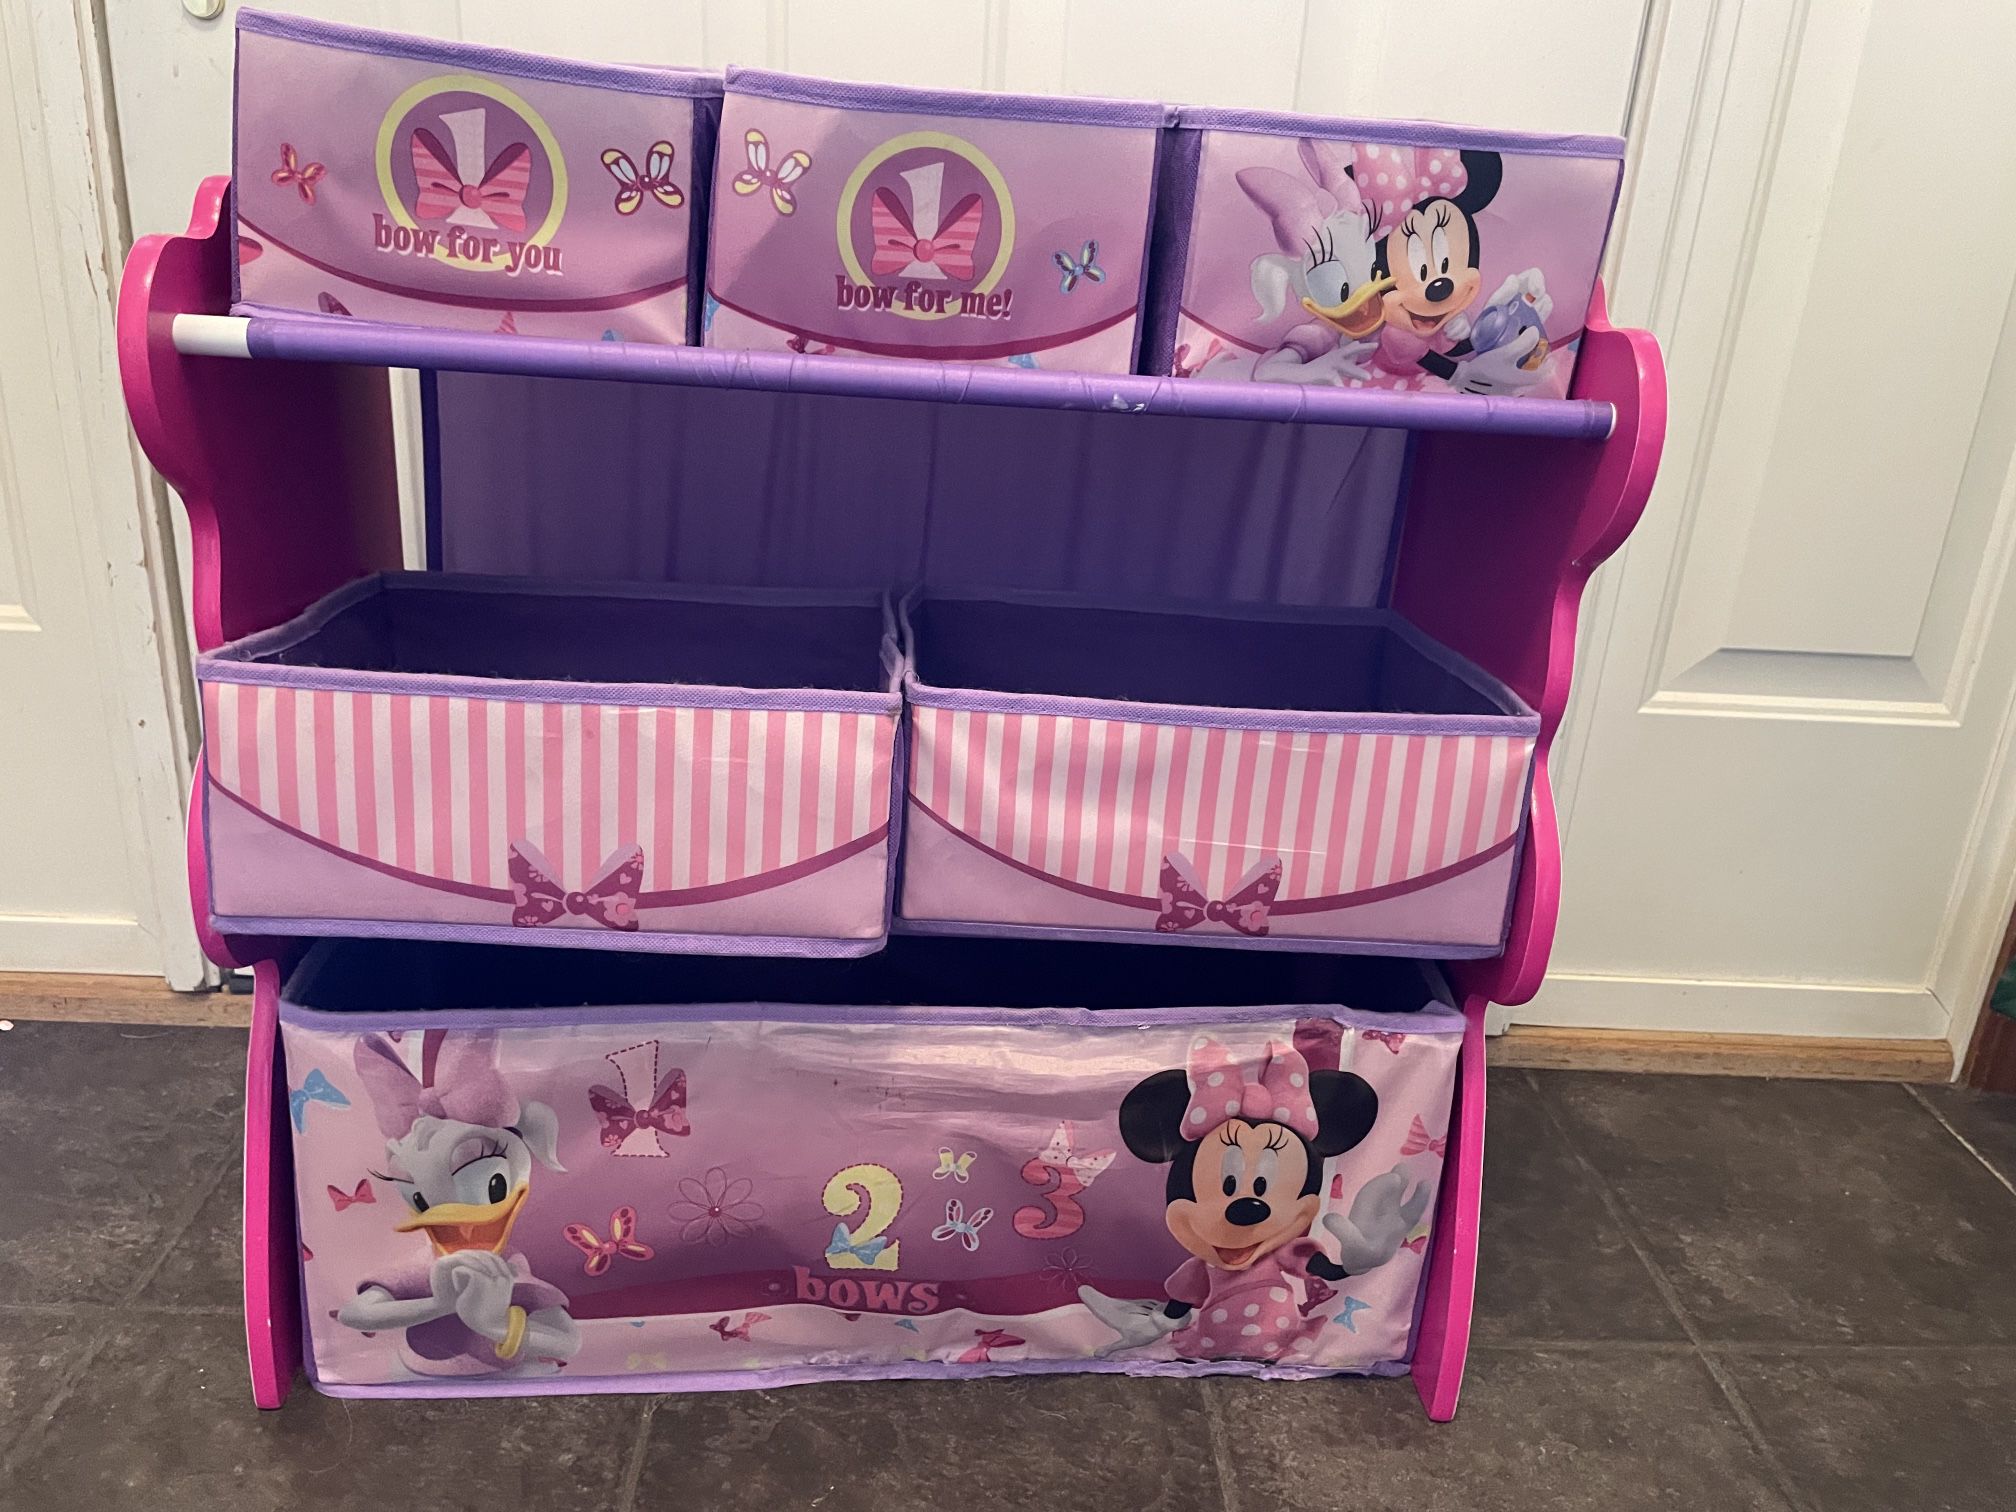 Minnie Mouse Dresser/Toy Bin/Storage Shelf